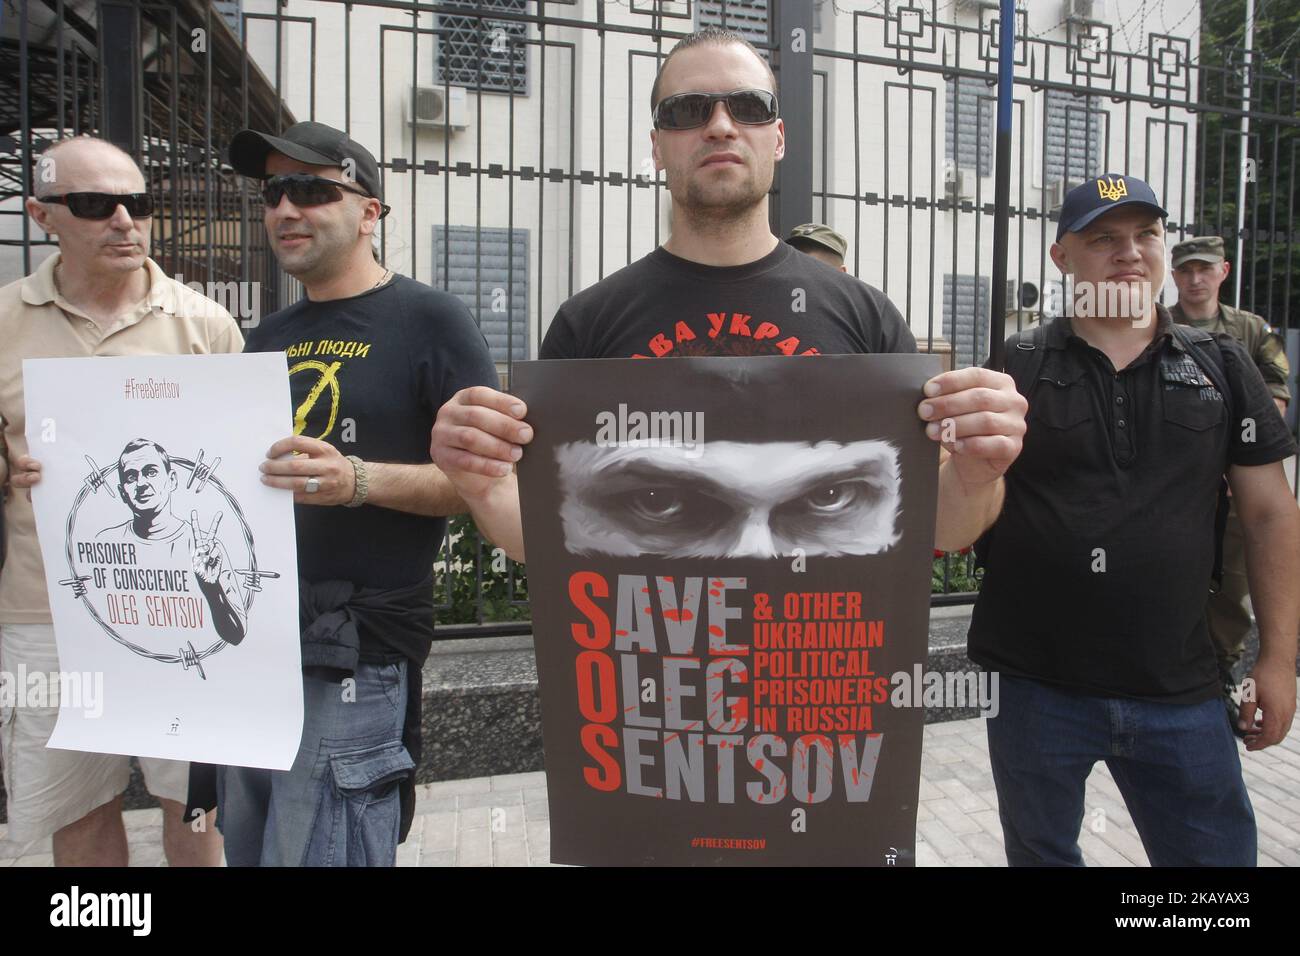 Les activistes tiennent des pancartes alors qu'ils prennent part à une manifestation pour la libération du directeur ukrainien Oleg Sentsov et d'autres prisonniers politiques, près de l'Embasy russe à Kiev, Ukraine, le 13 juin 2018. (Photo par STR/NurPhoto) Banque D'Images